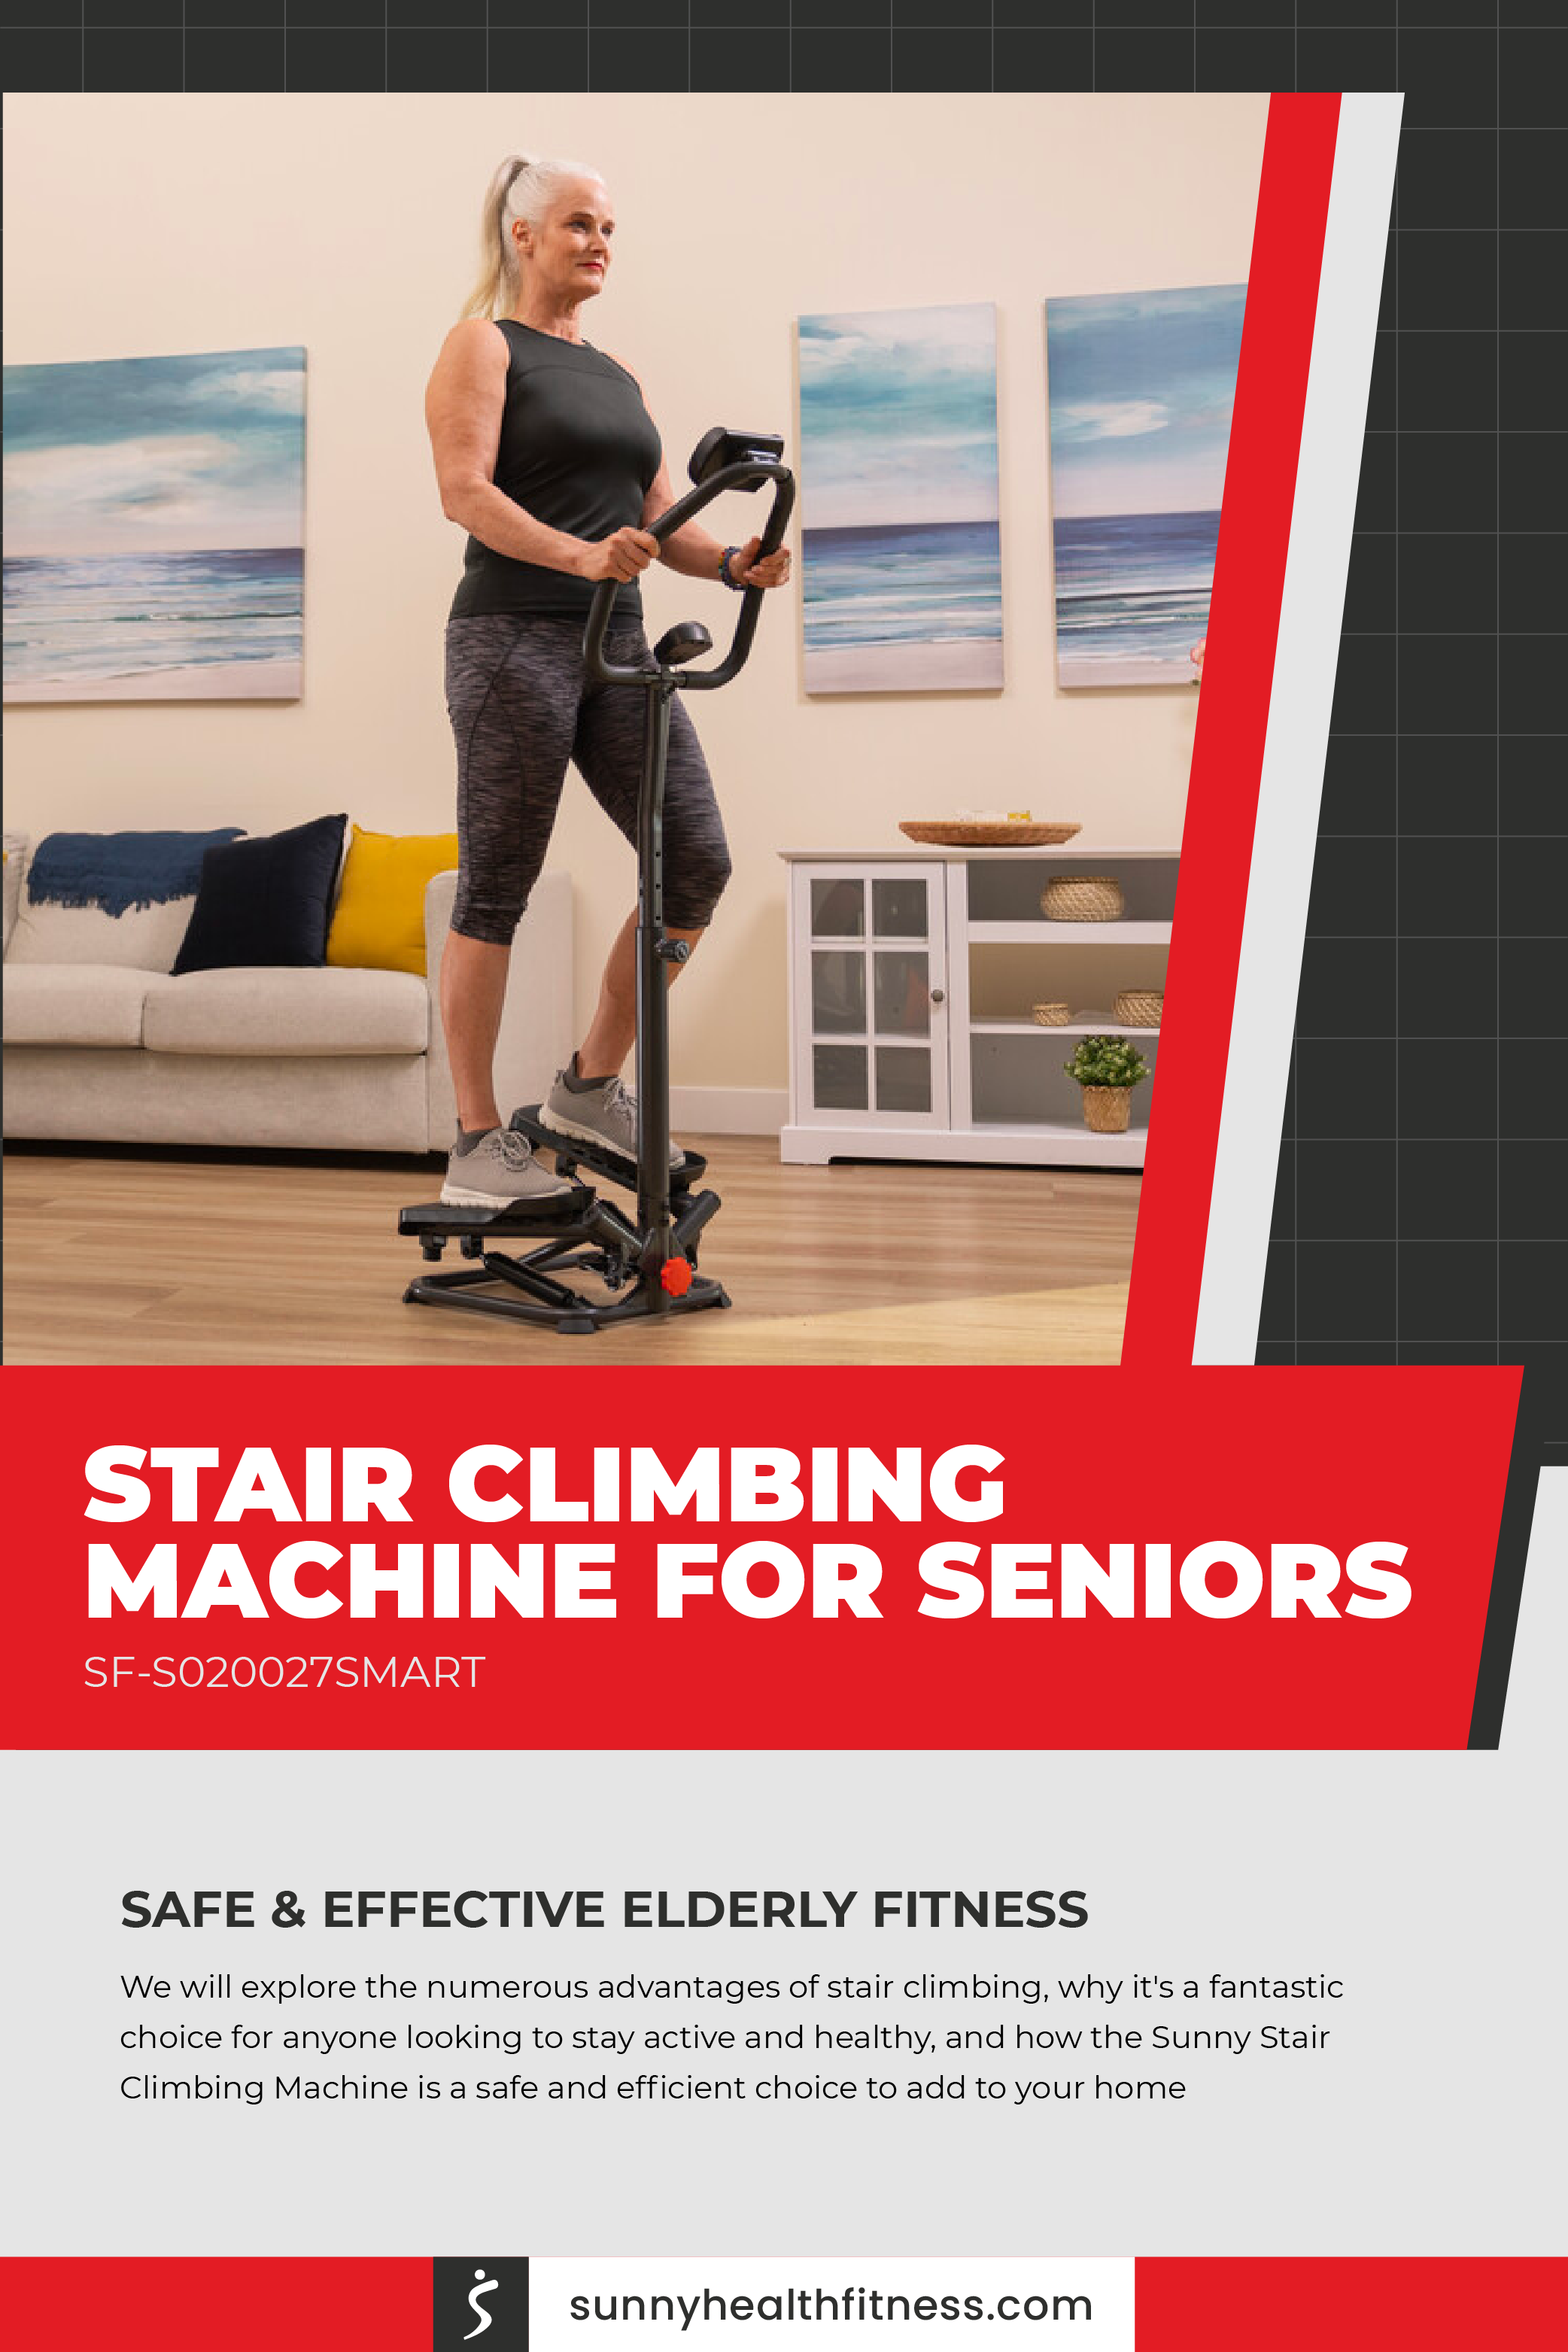 Stair Climbing Machine for Seniors Infographic